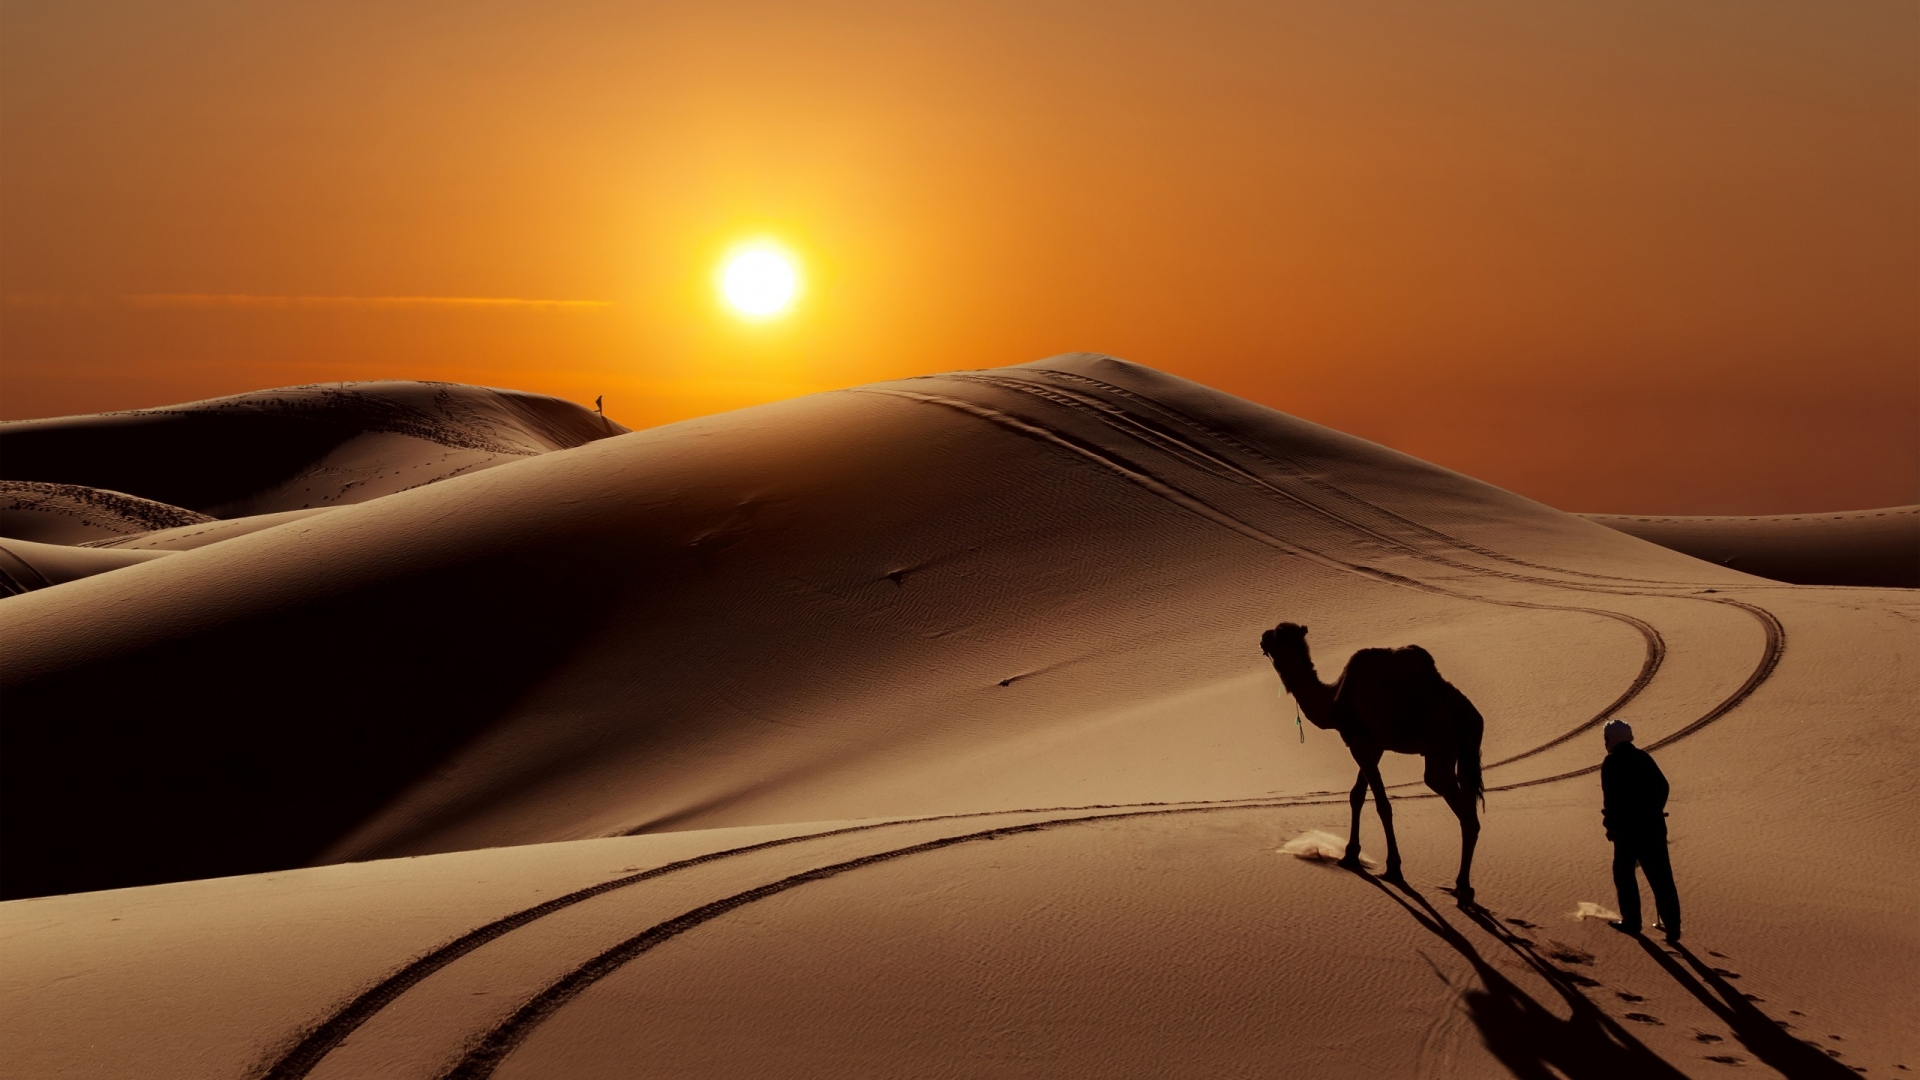 Sunset in Desert for 1920 x 1080 HDTV 1080p resolution